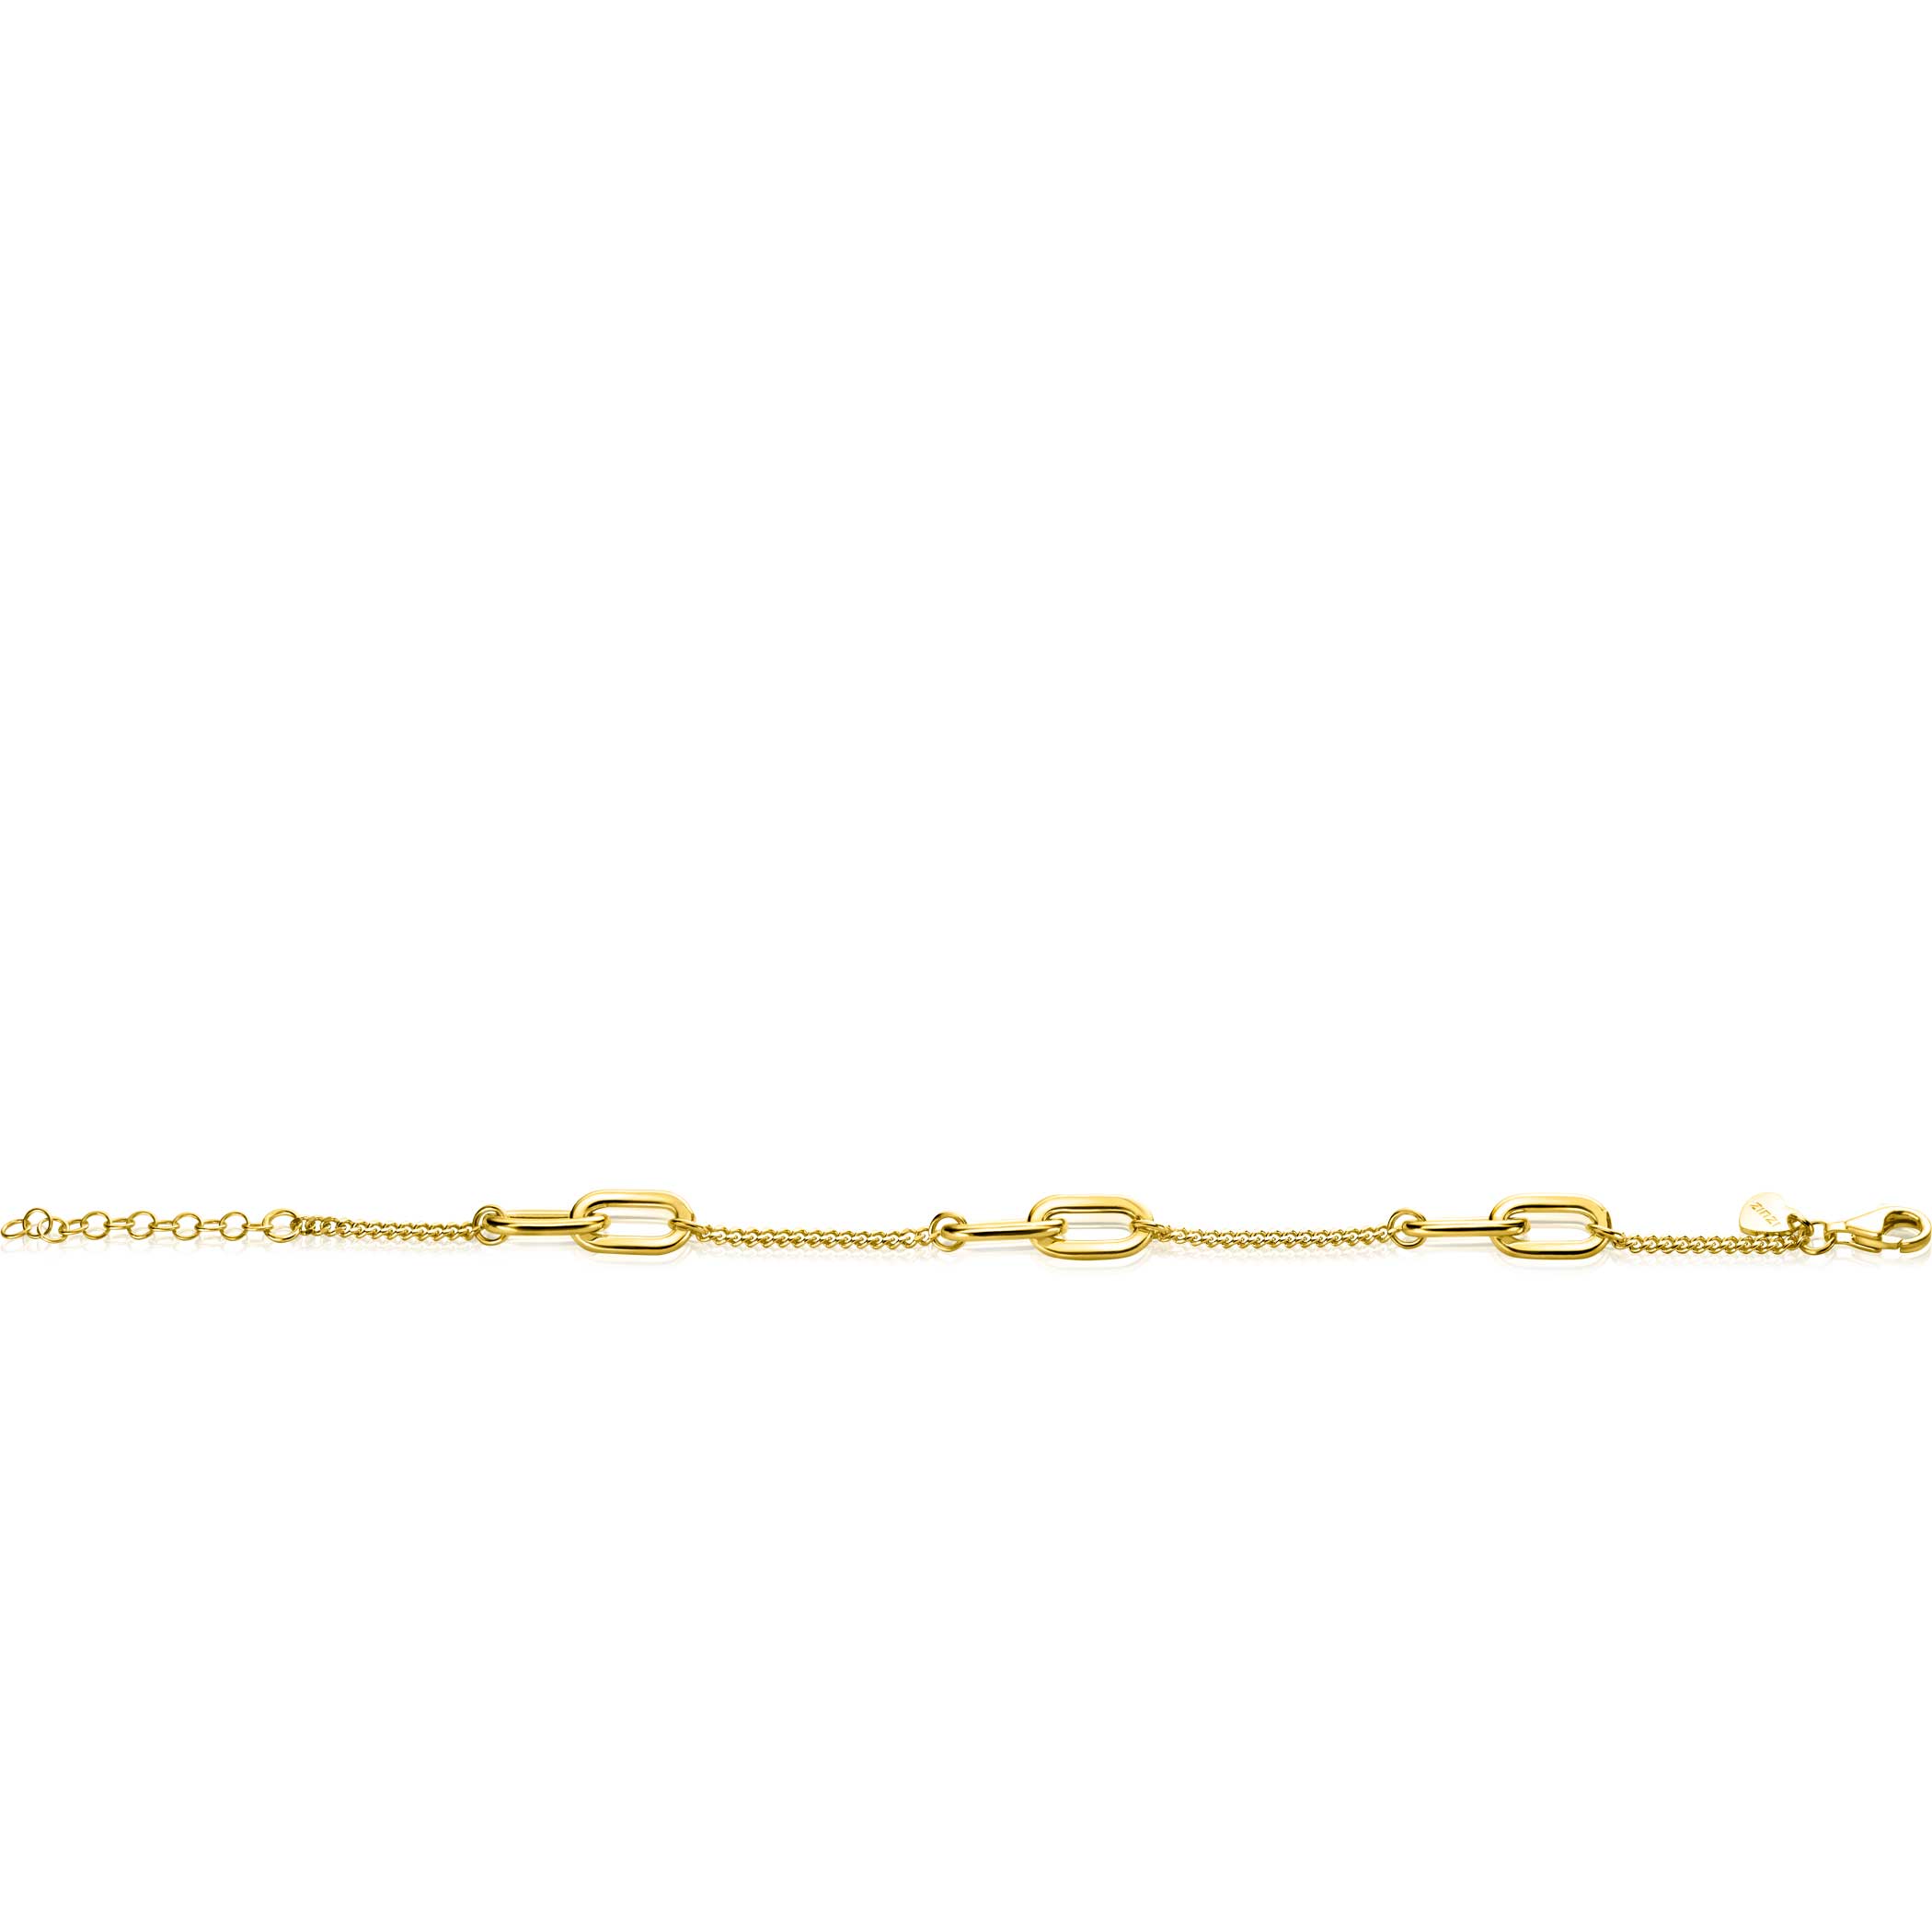 ZINZI gold plated zilveren gourmet armband met zes ovale schakels 7mm breed 17-20cm ZIA2412G